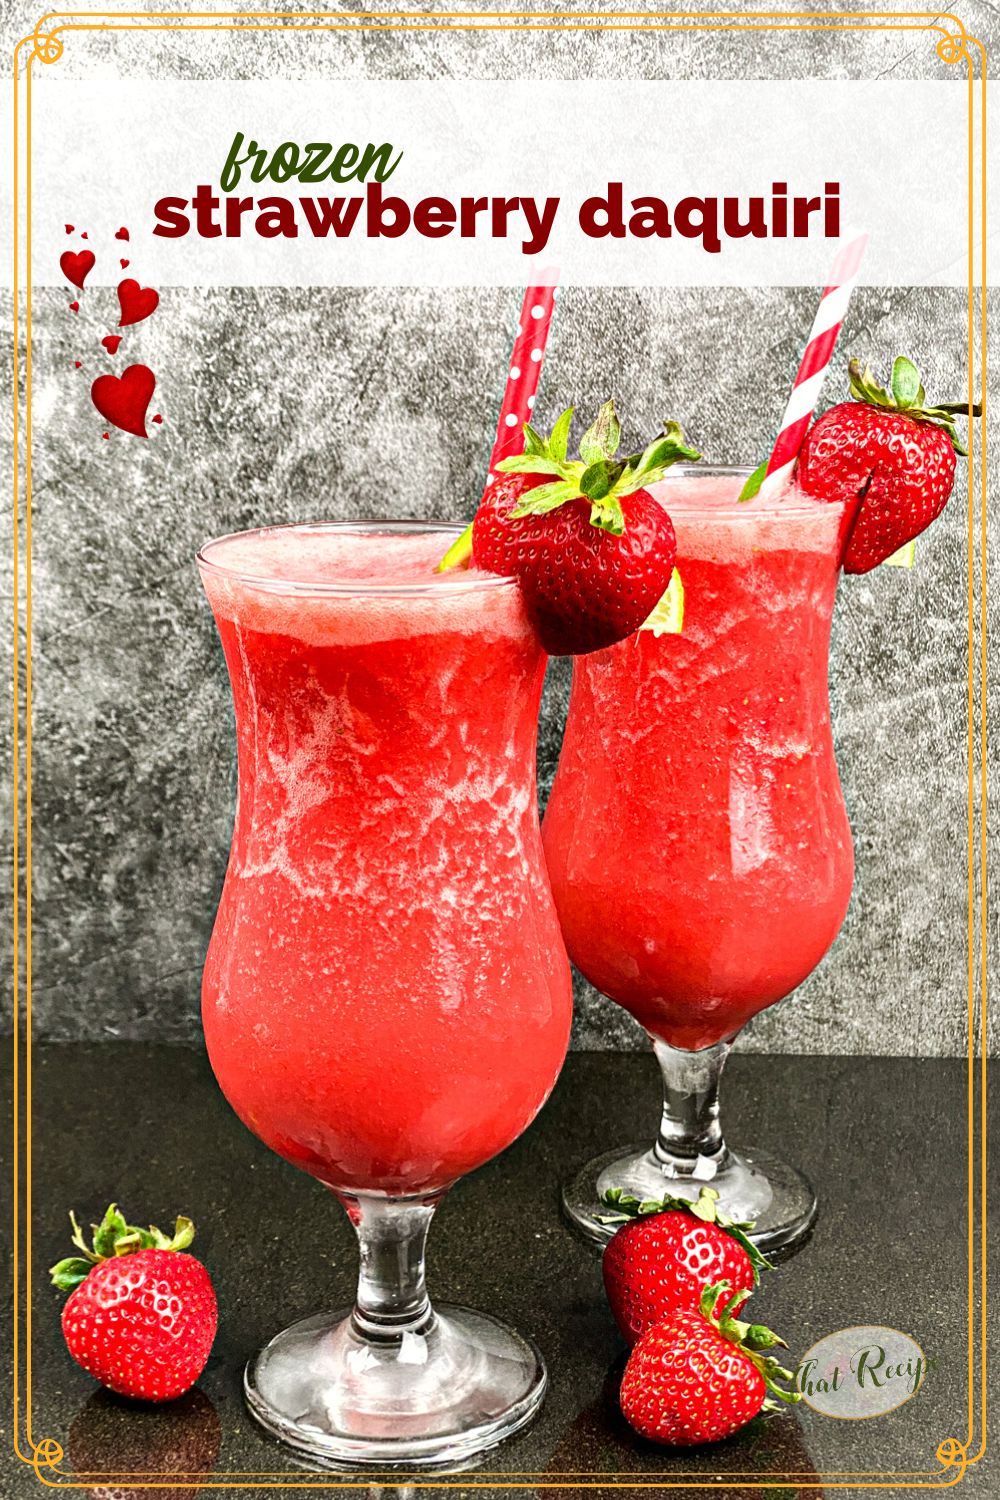 2 strawberry daiquiris in hurricane glasses with fresh strawberries